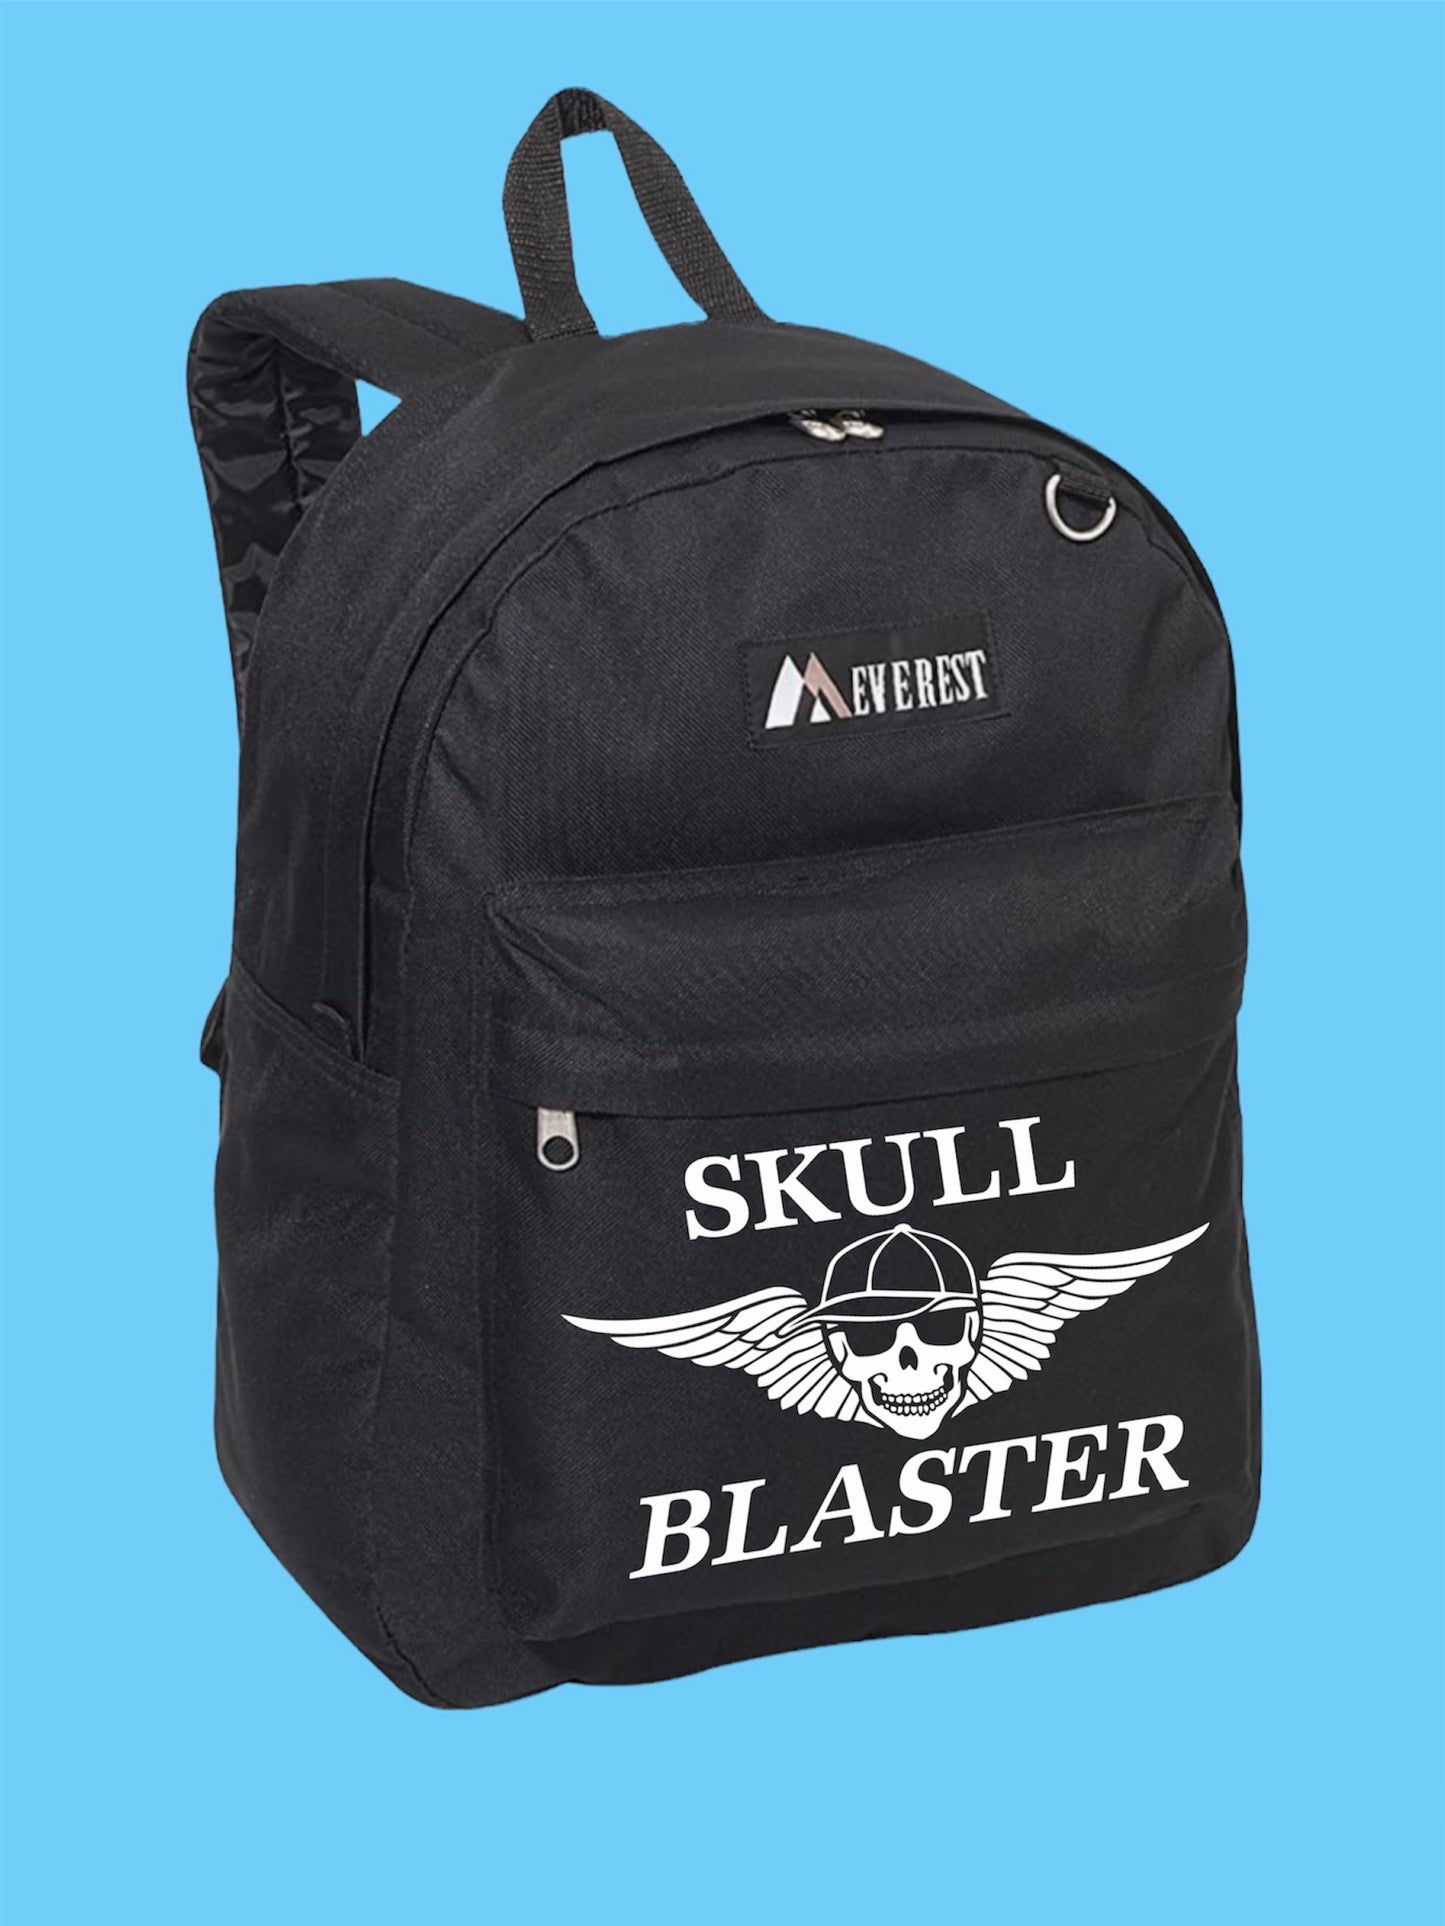 Backpacks by Skull Blaster